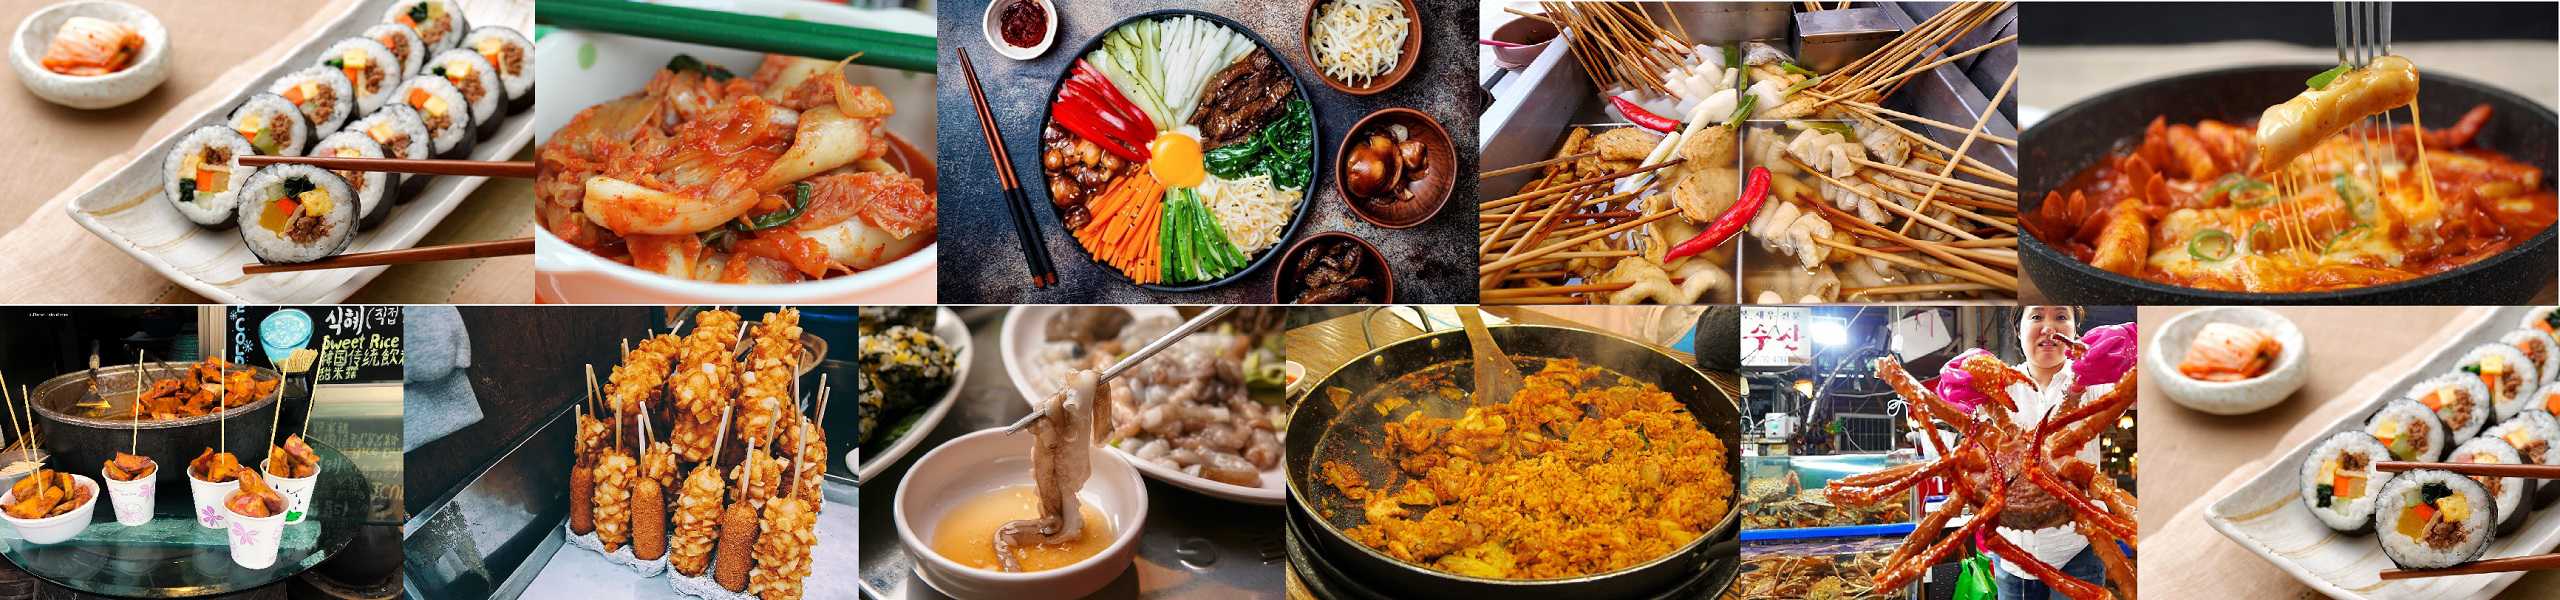 Món ẩm thực địa phương, đặc sản Hàn Quốc